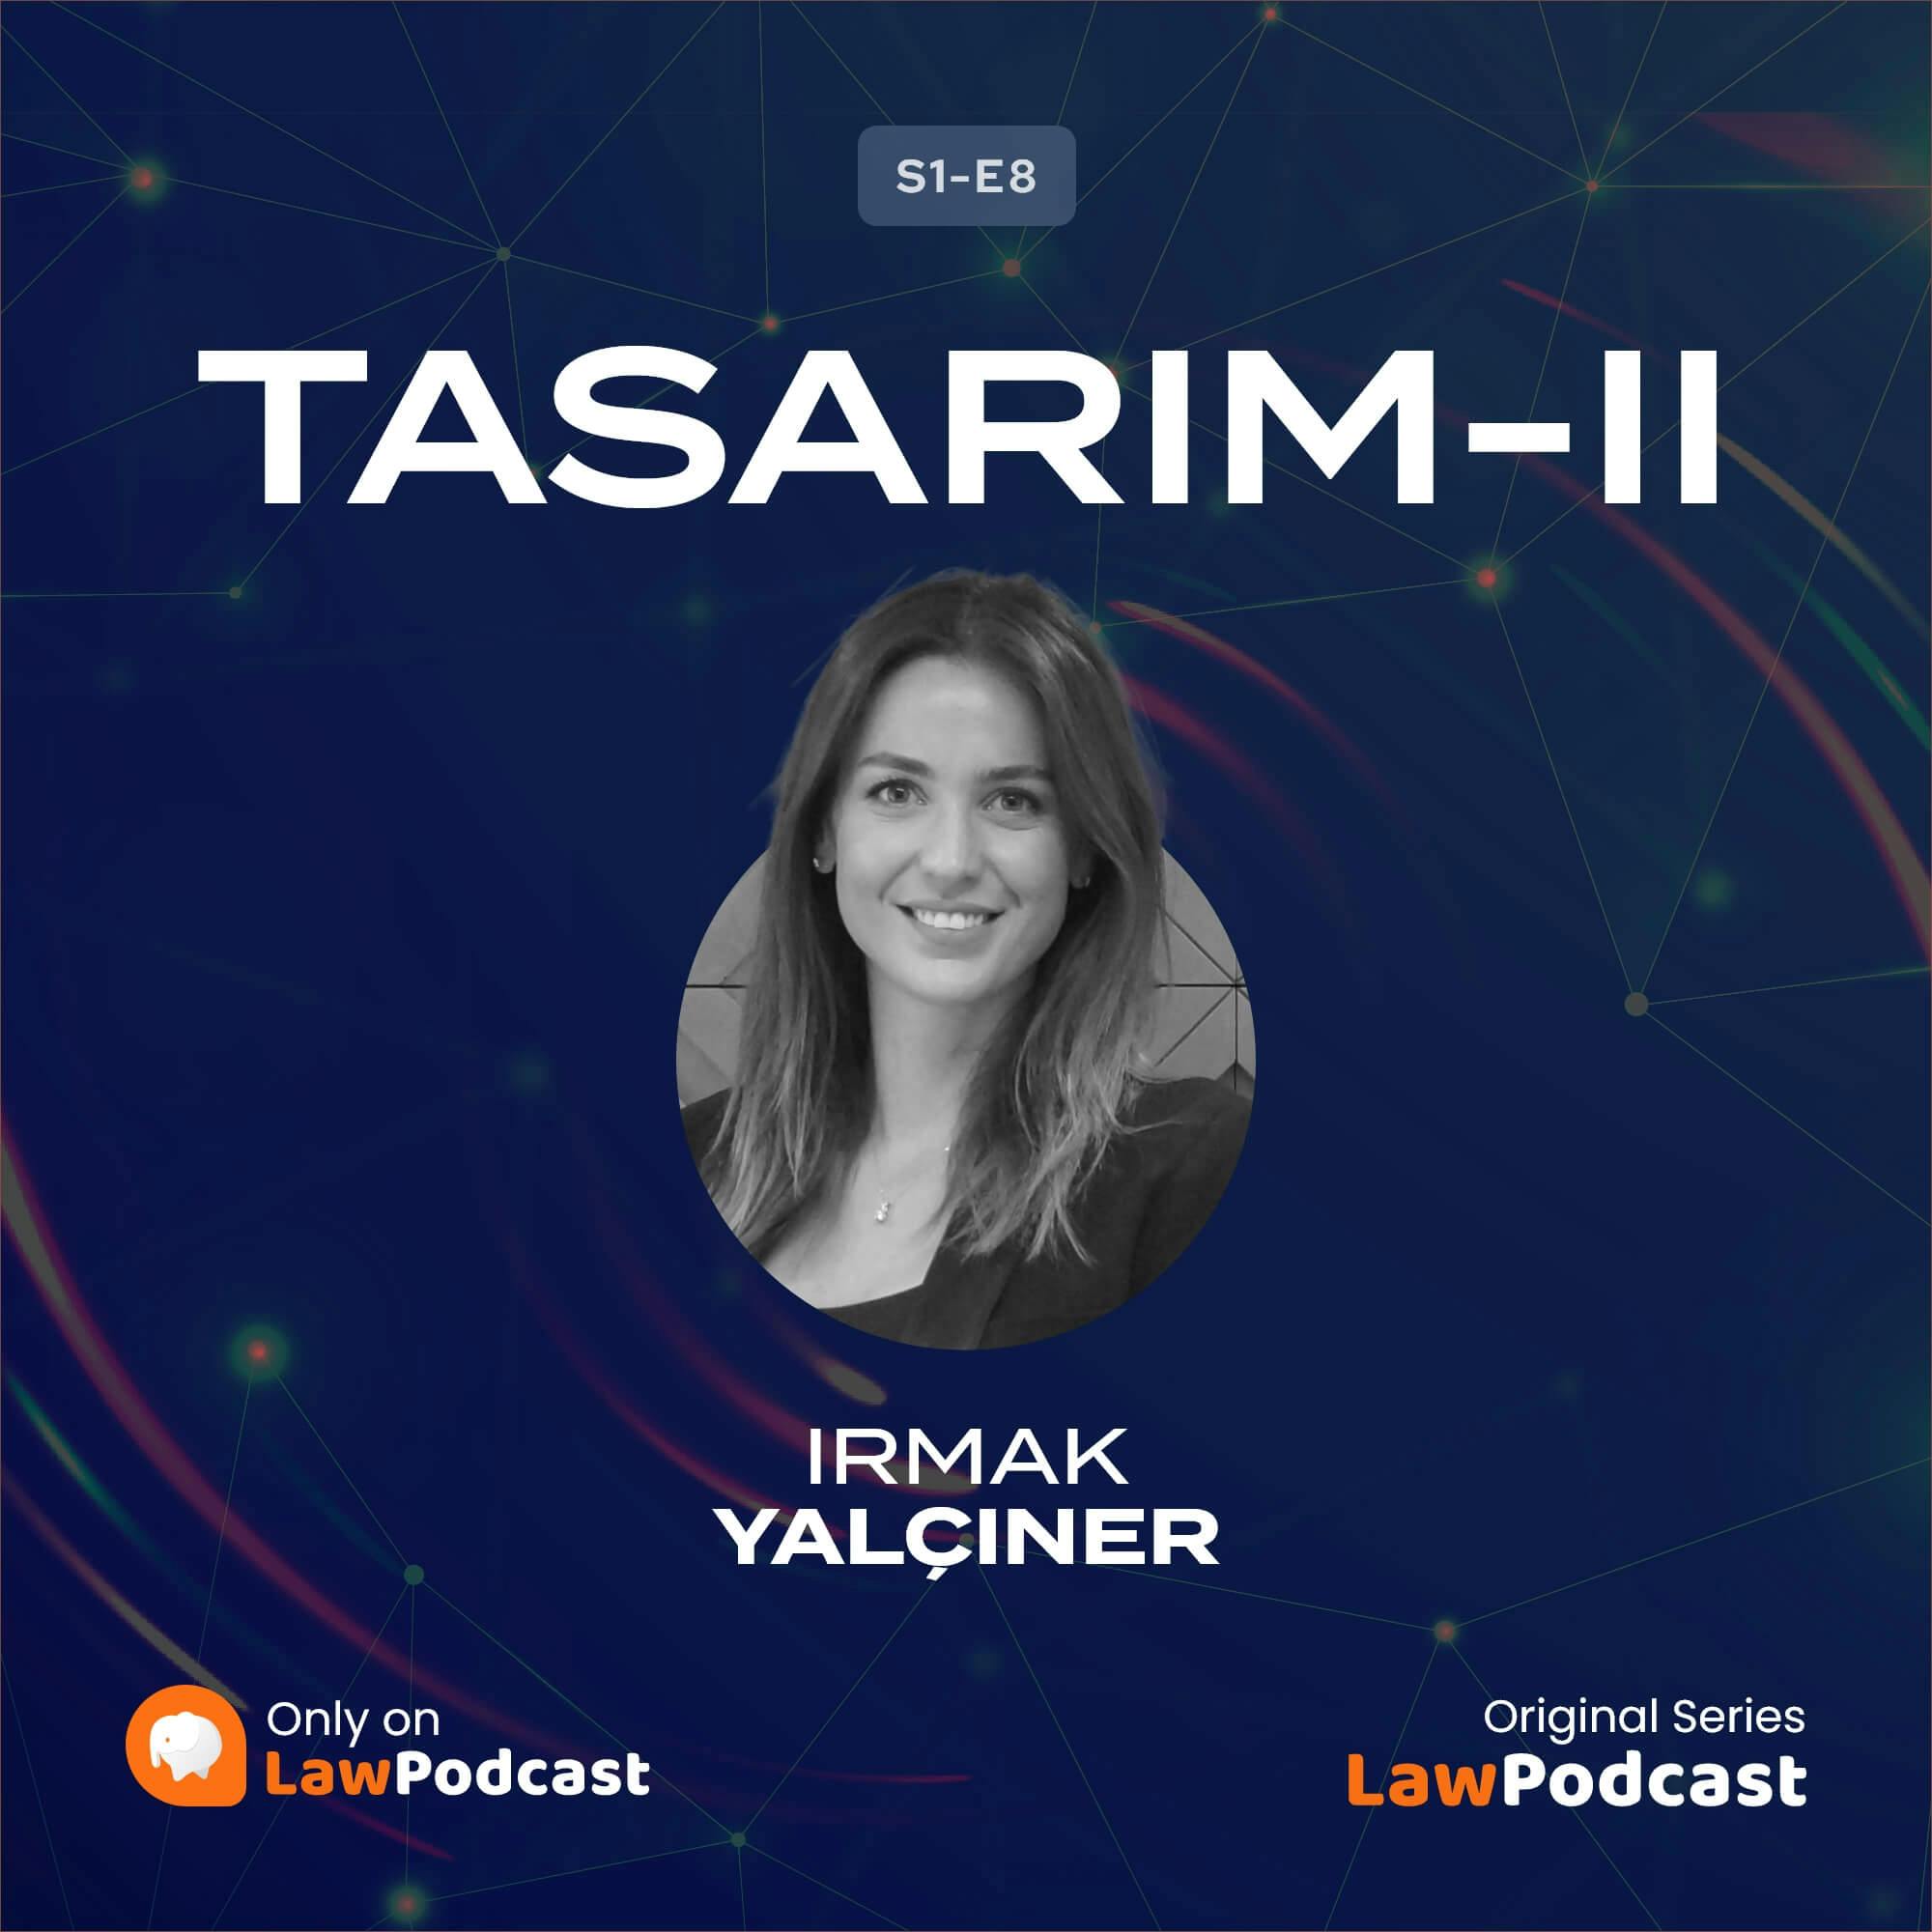 TASARIM II : Tasarımda Yenilik ve Ayırt Edici Nitelik Ölçütleri, Tasarım Başvuru ve Ölçütlerin Değerlendirilmesi